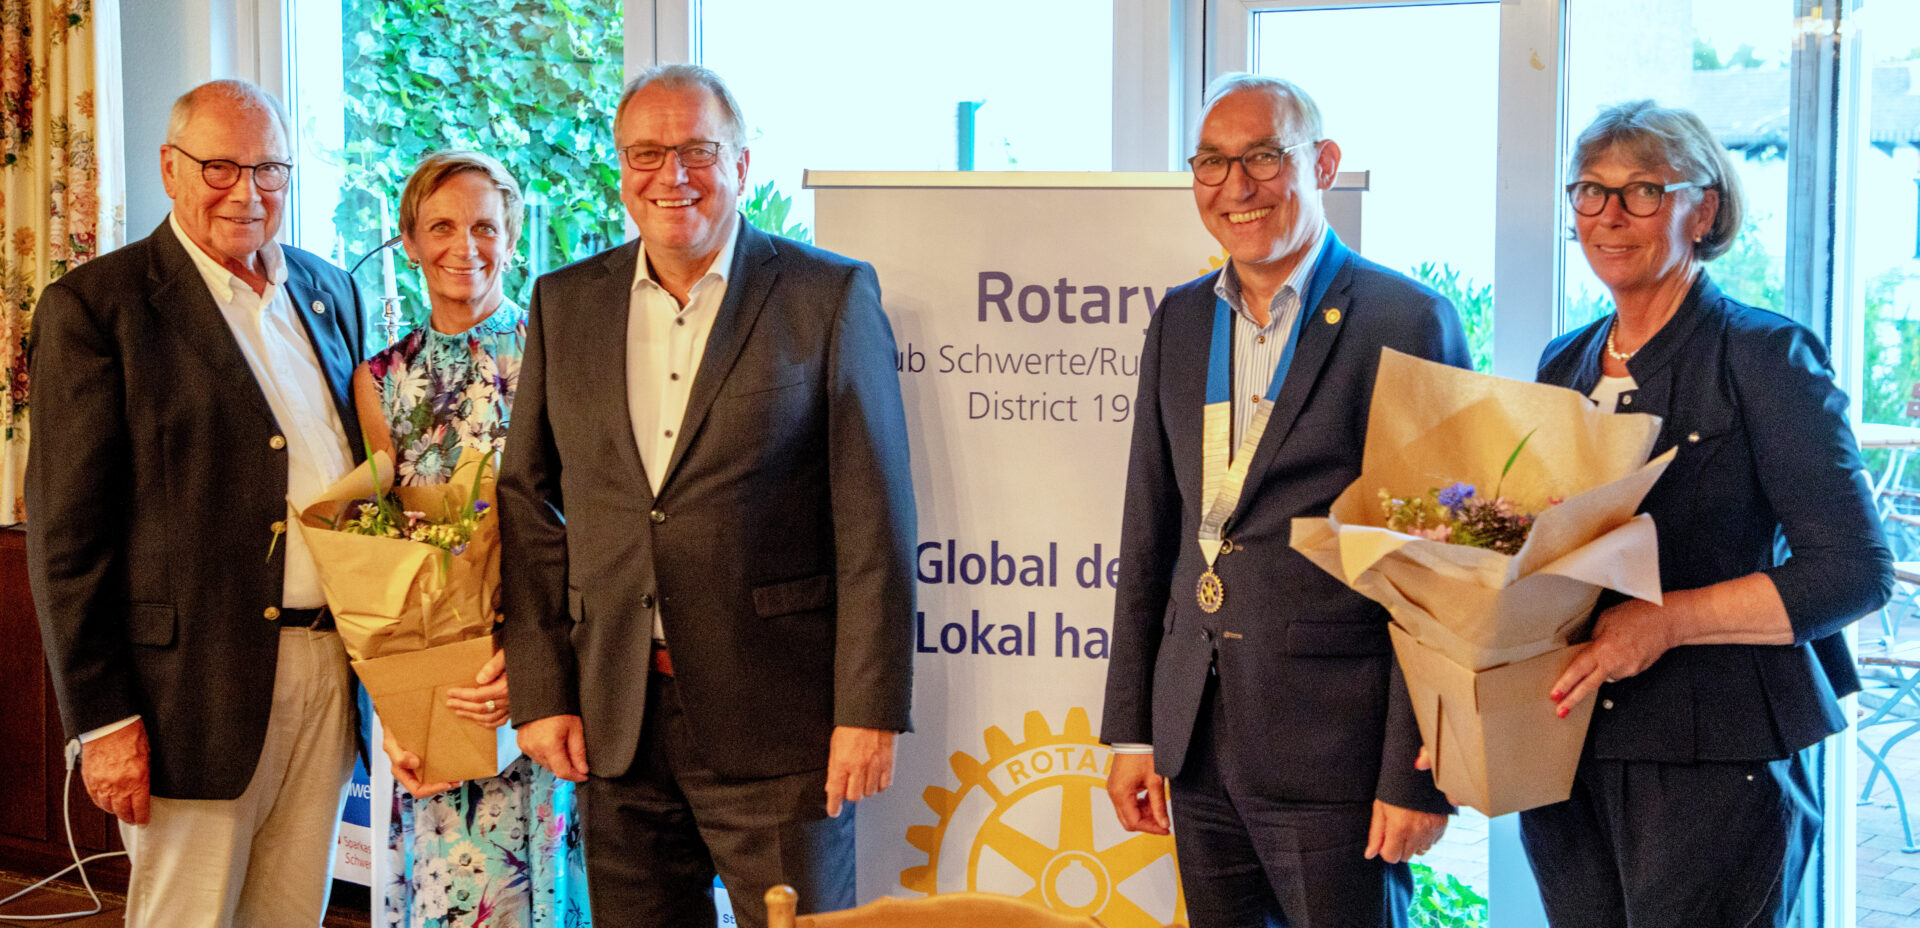 Heinrich Böckelühr ist neuer Präsident des Rotary Clubs Schwerte/Ruhr